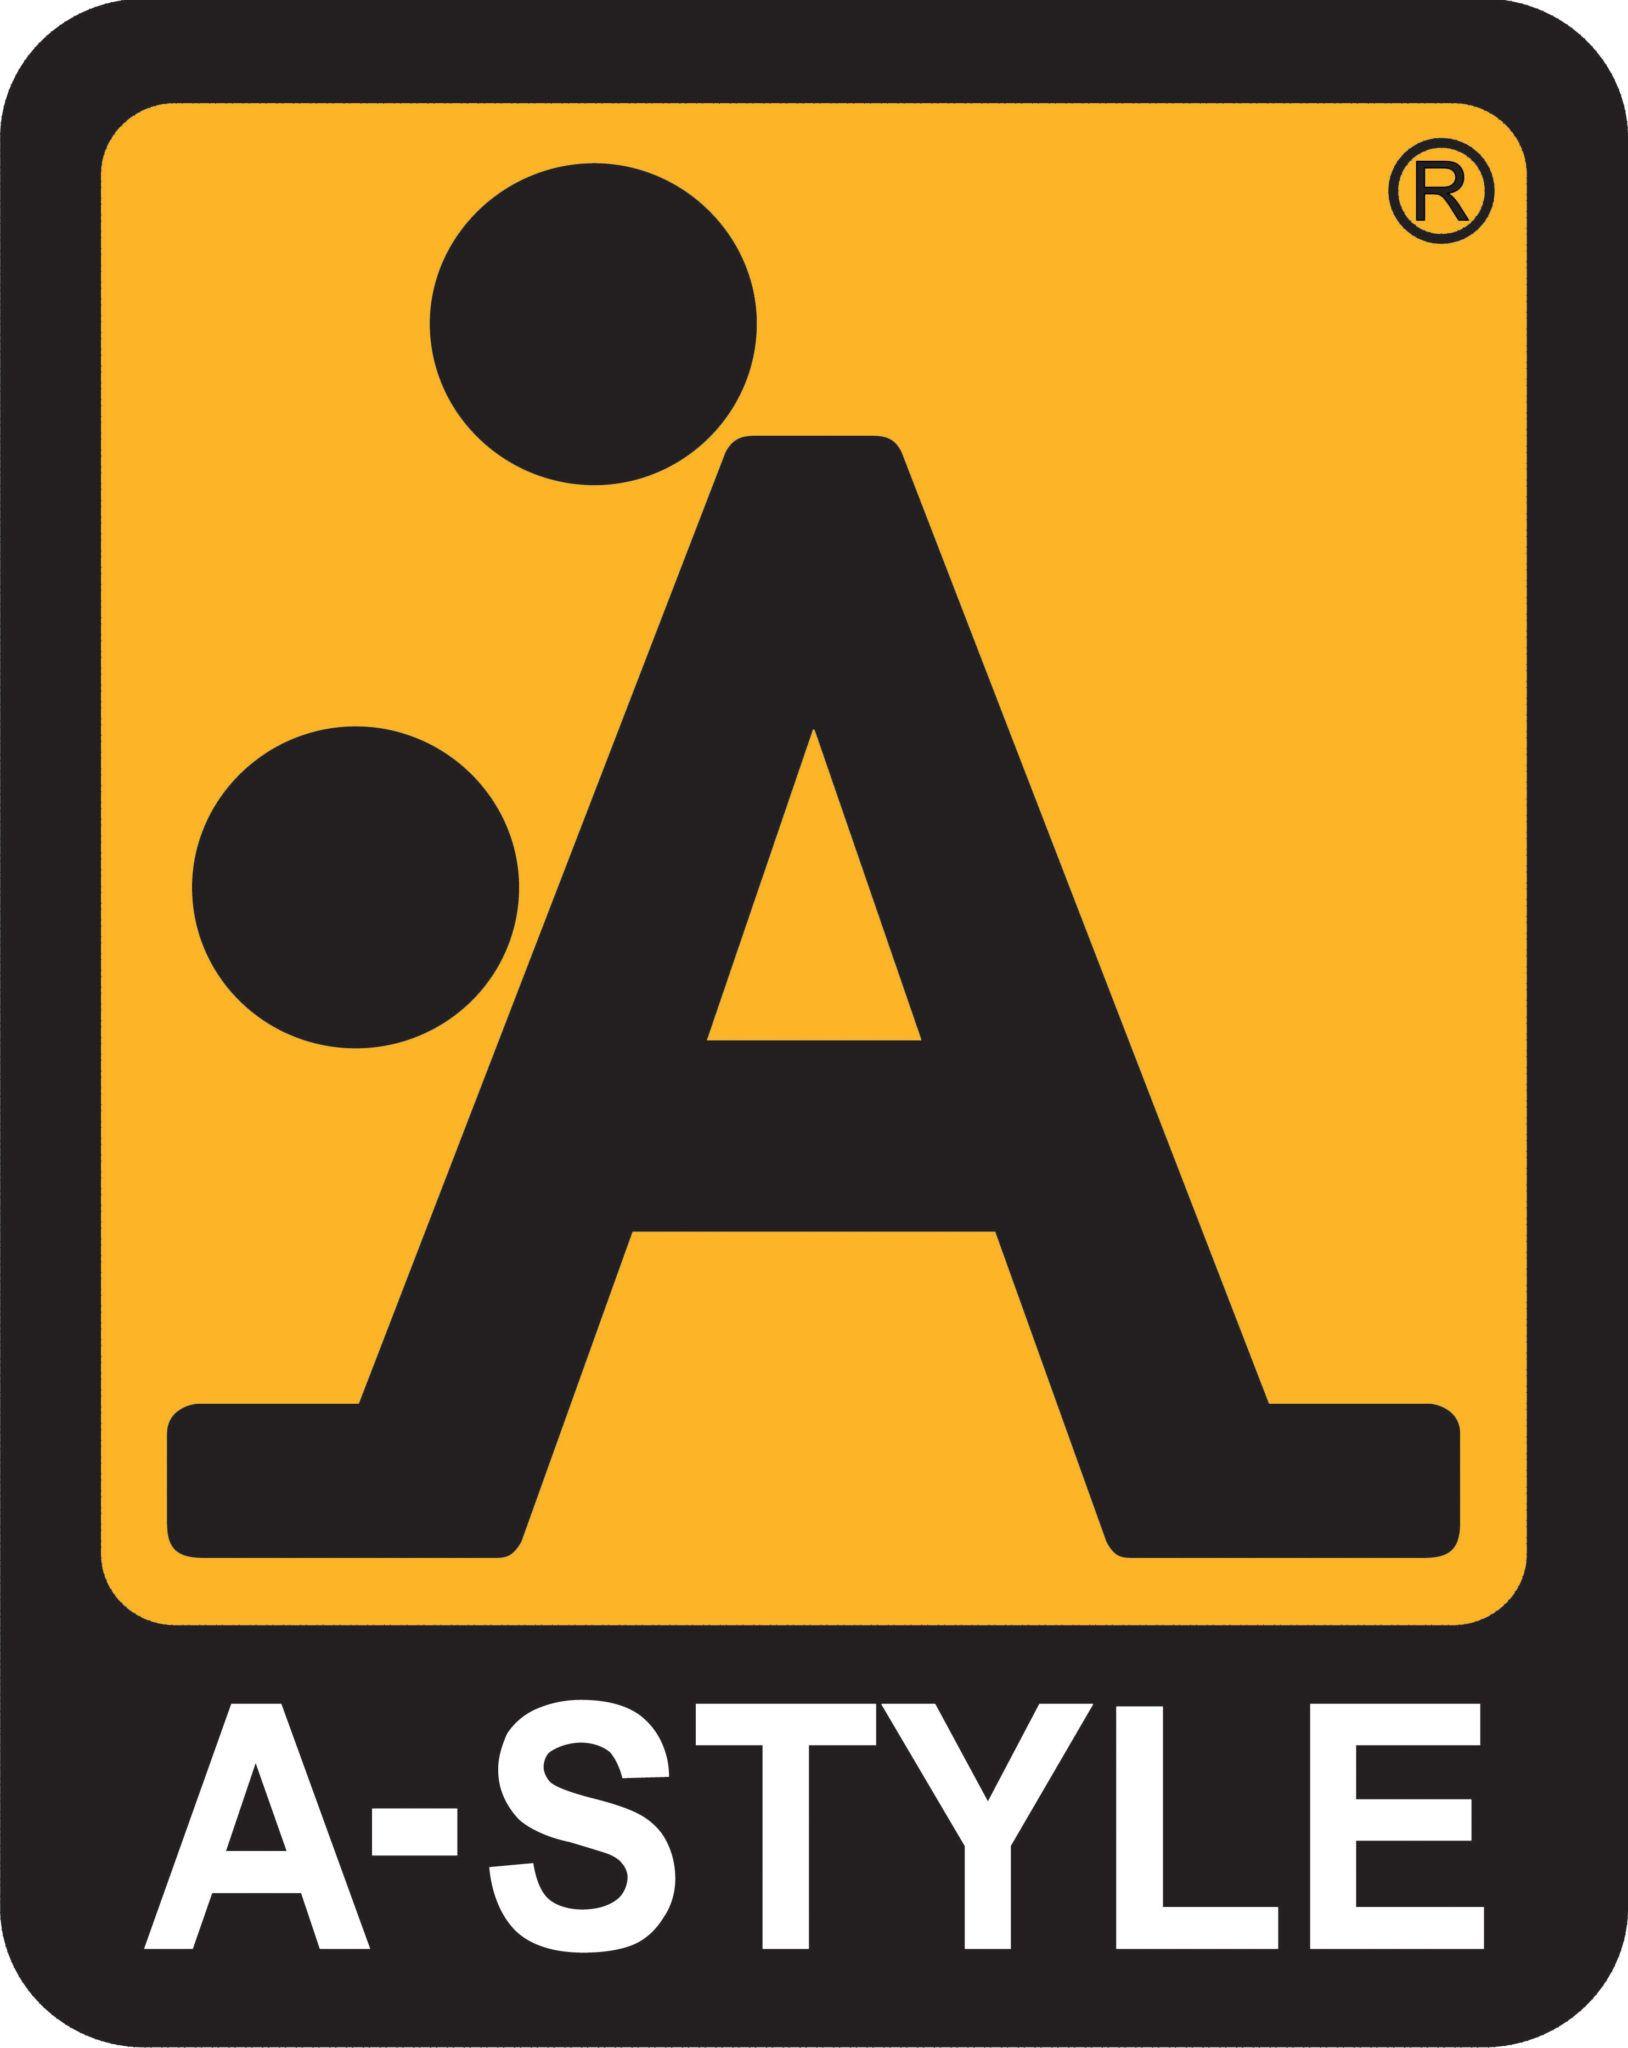 Italian Clothing Company Logo - Meet A-Style, the Clothing Company with the Doggie-style Logo ...